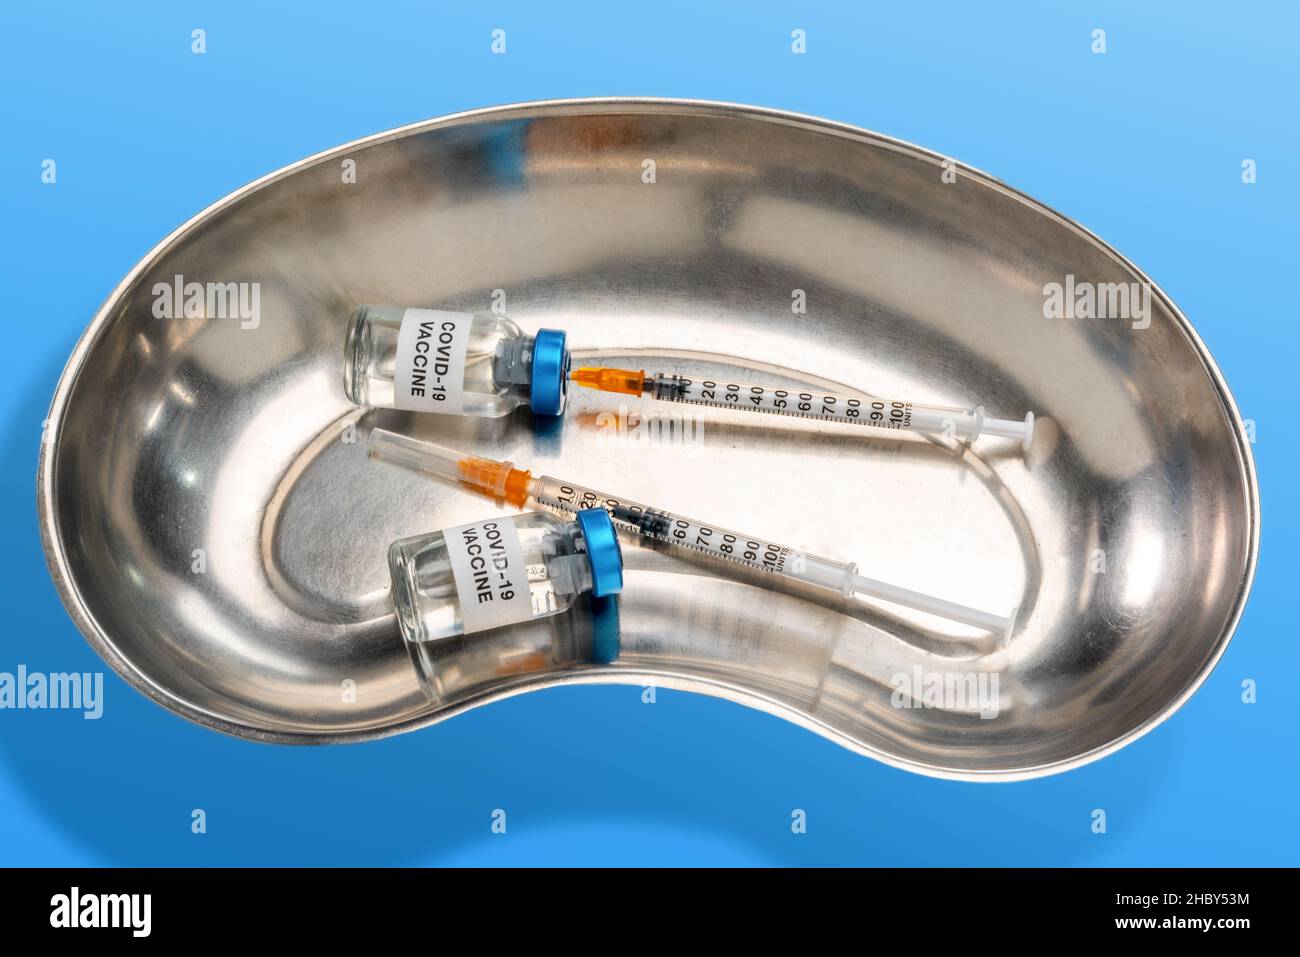 Dos viales de vacuna con jeringa aspirando la dosis en un recipiente de riñón medicinal inoxidable, sobre fondo azul claro Foto de stock